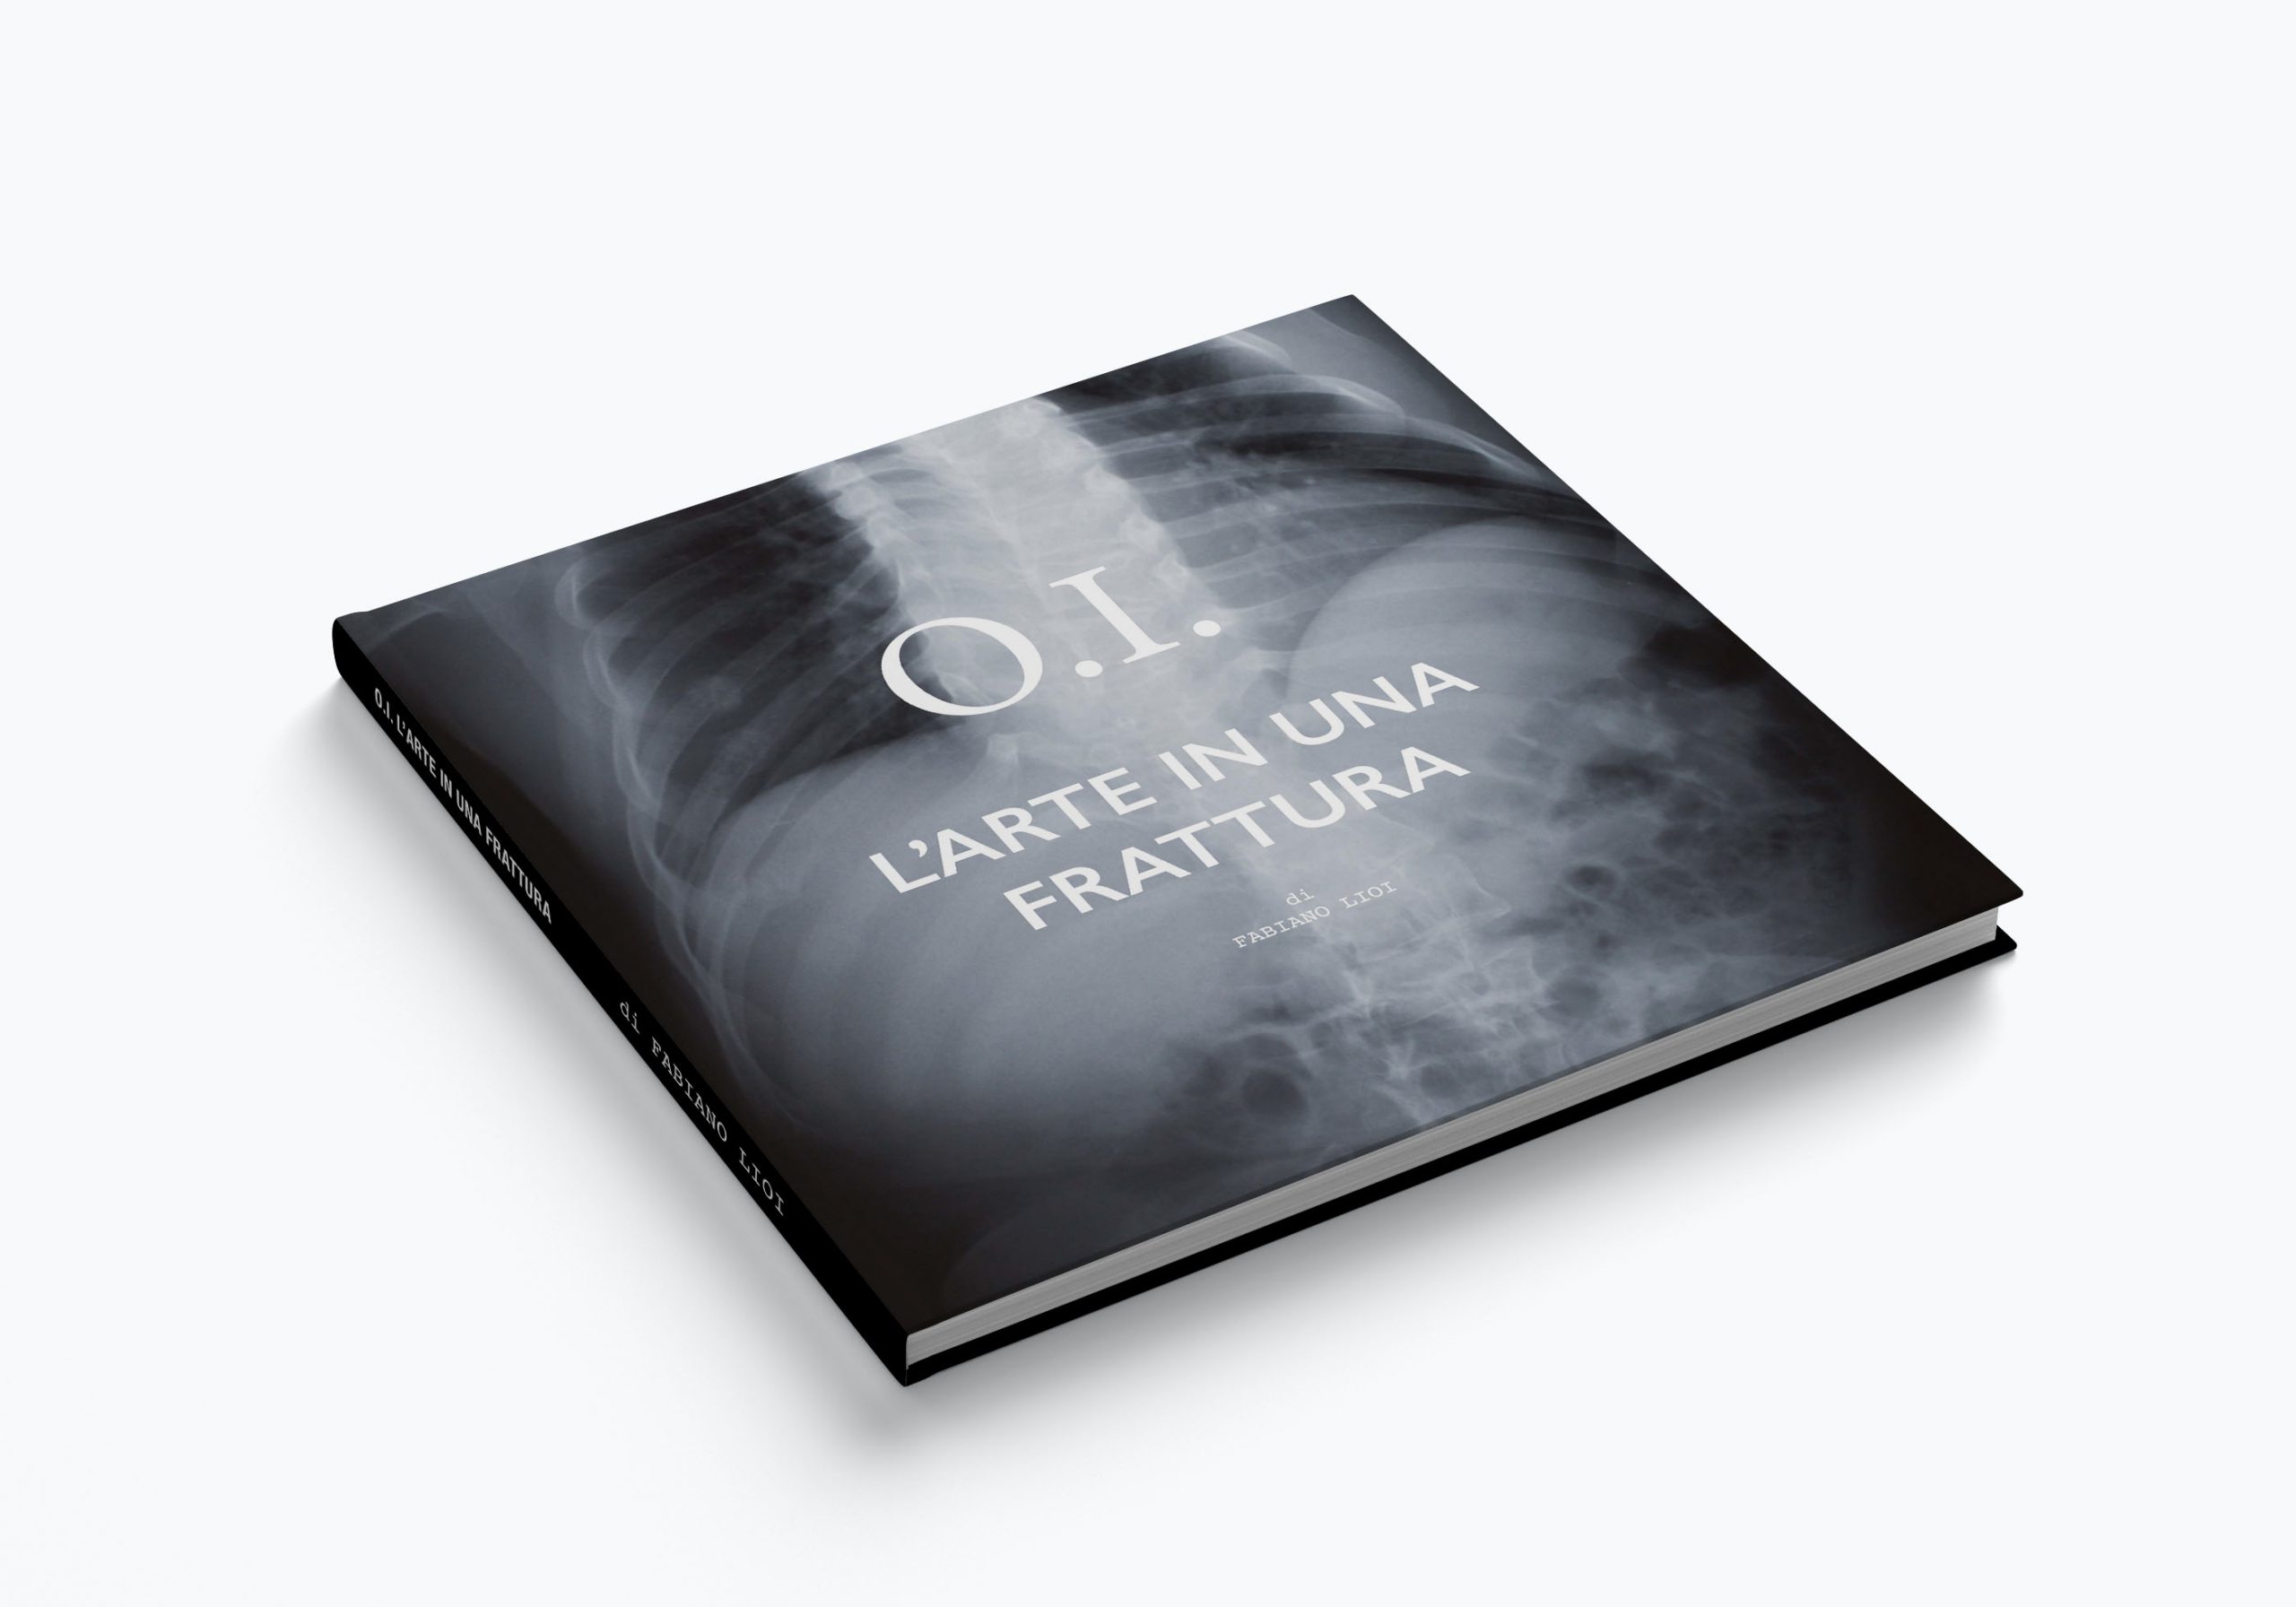 O.I. L'arte in una frattura: la copertina del libro sull'osteogenesi imperfetta